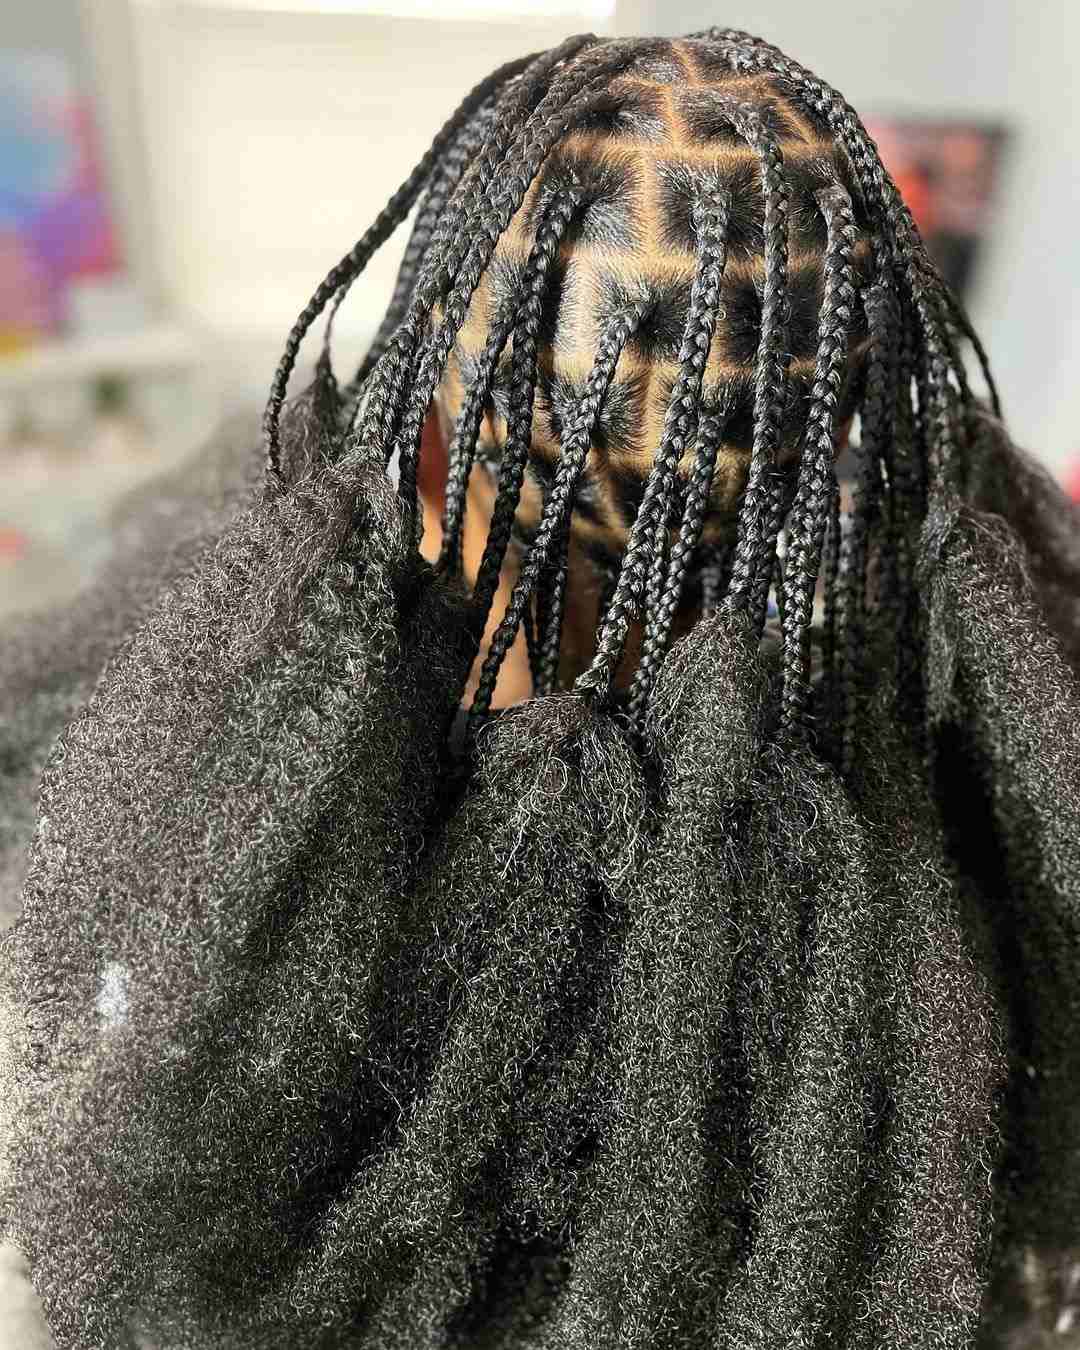 criss cross rubber band braids